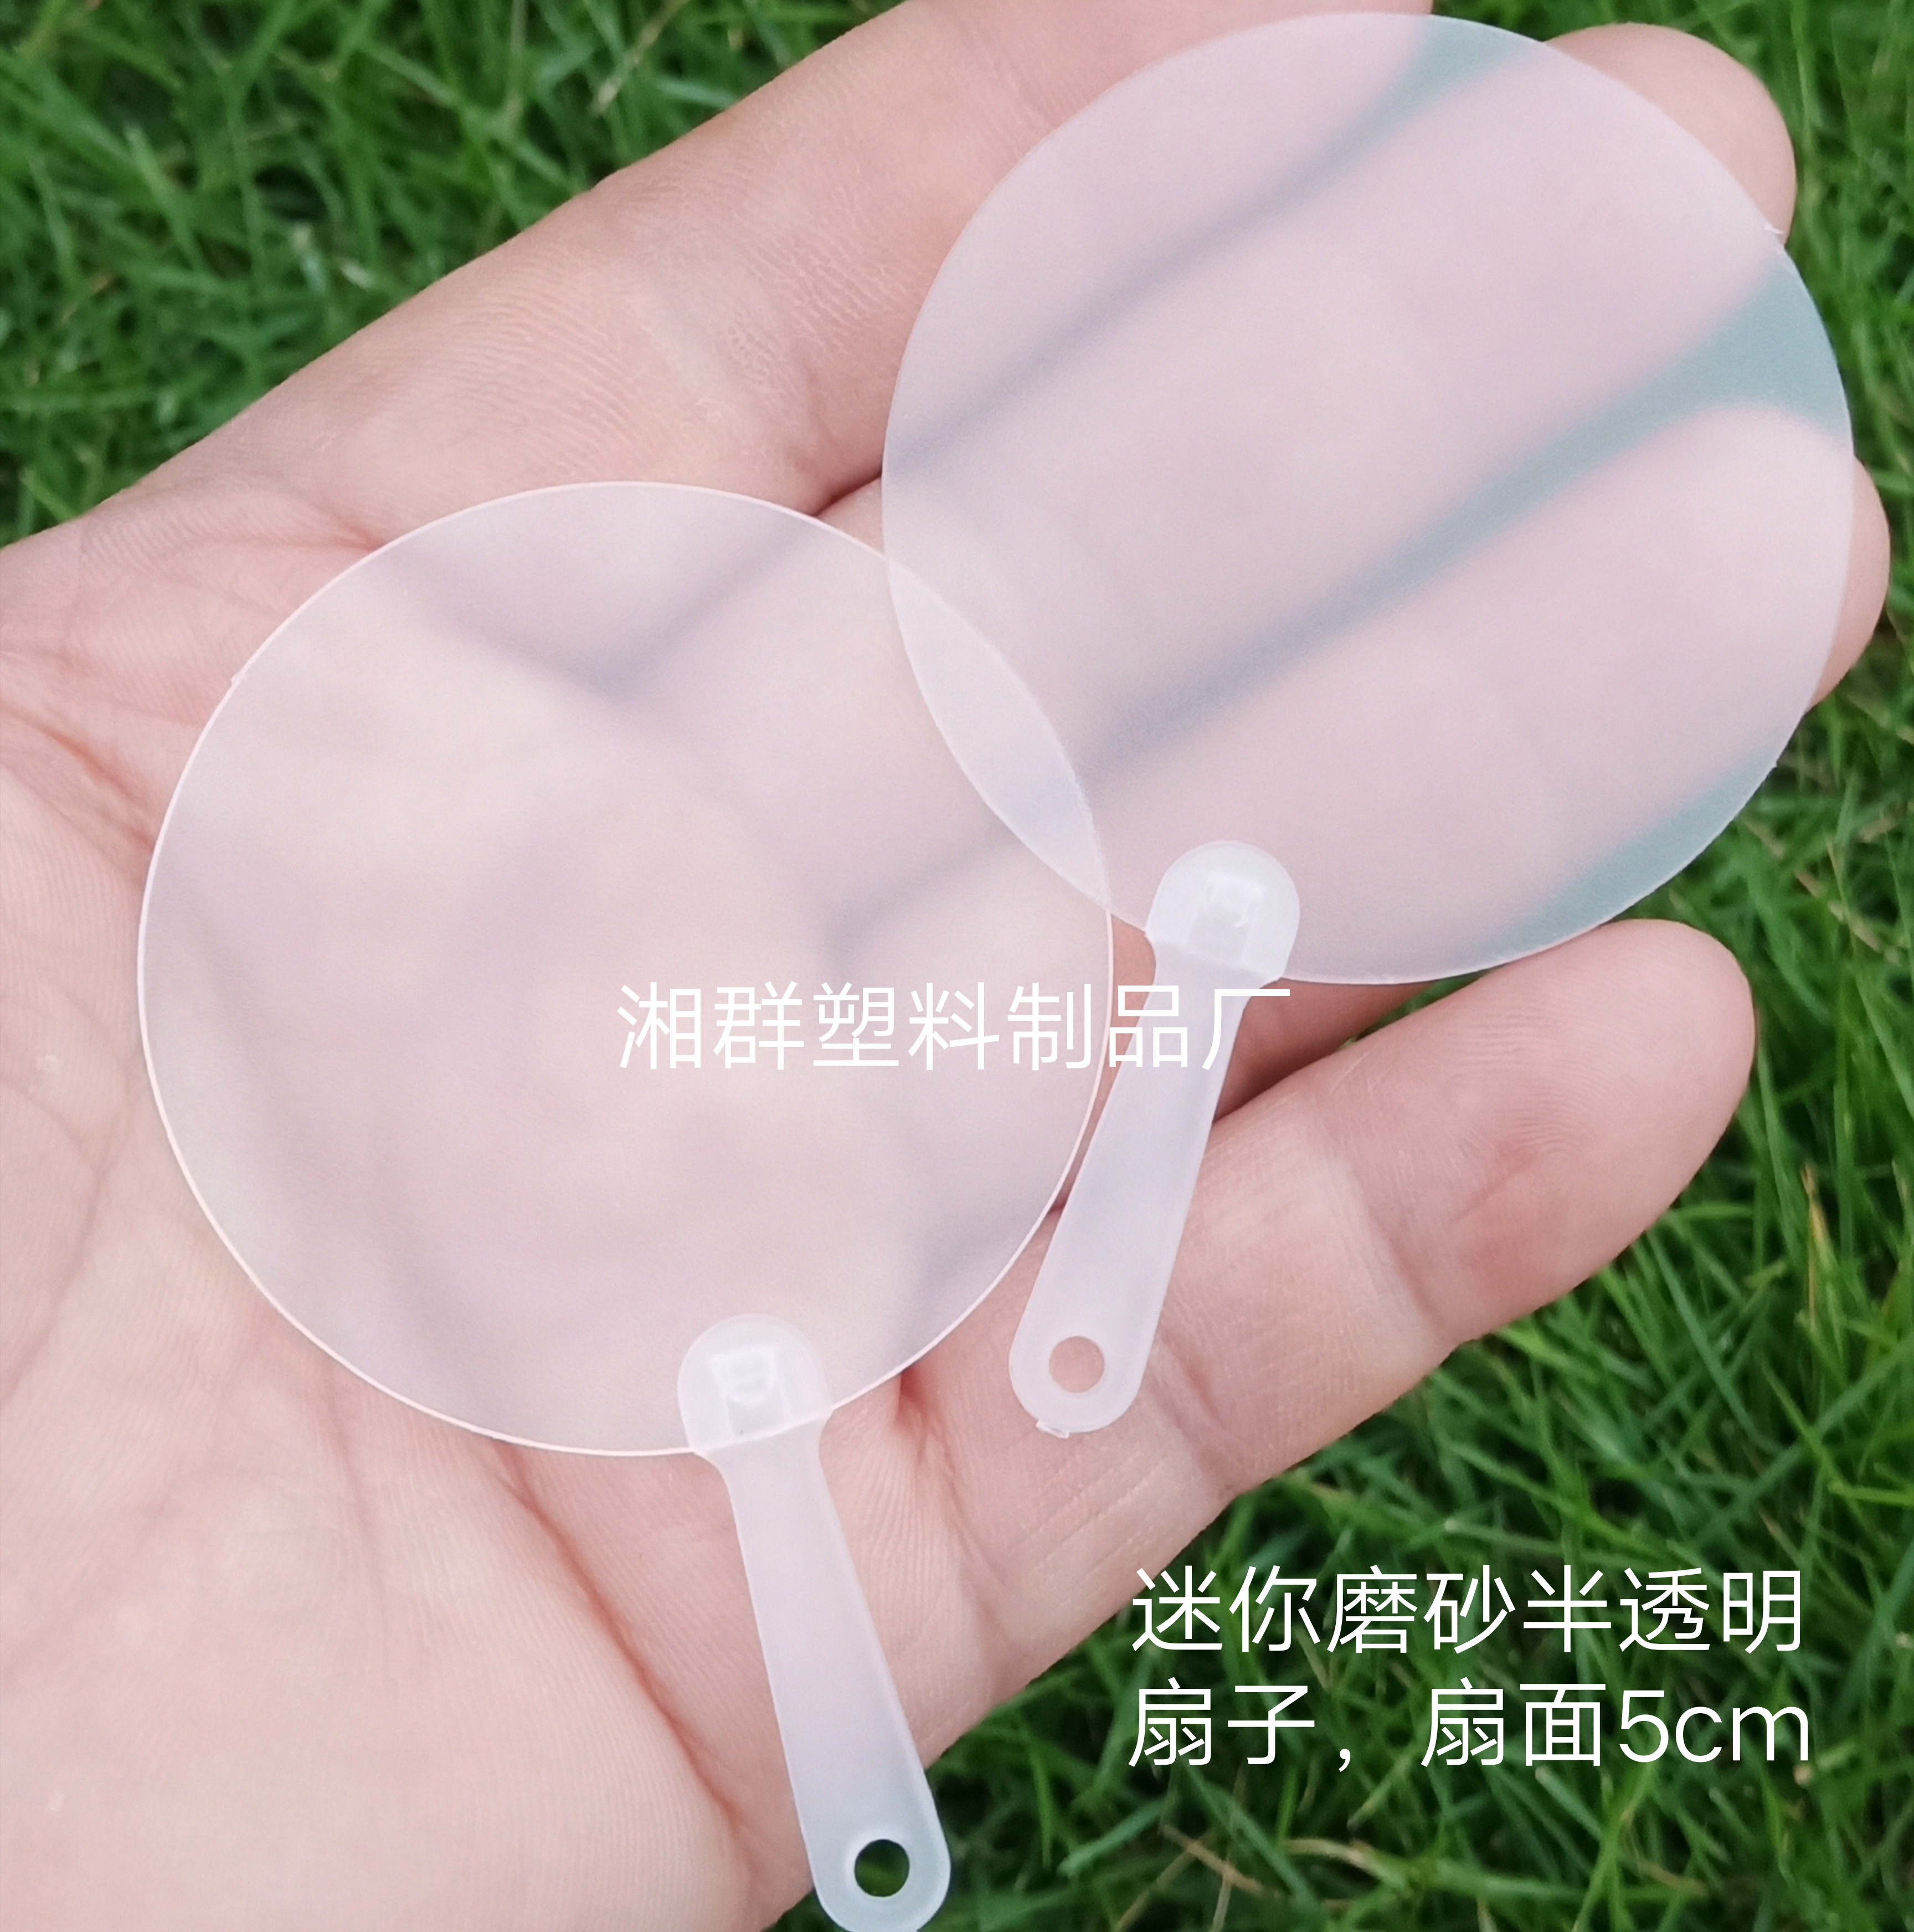 厂家定制白色空白塑料绘画扇子大头柄空白透明扇磨砂半透明广告扇 - 图1